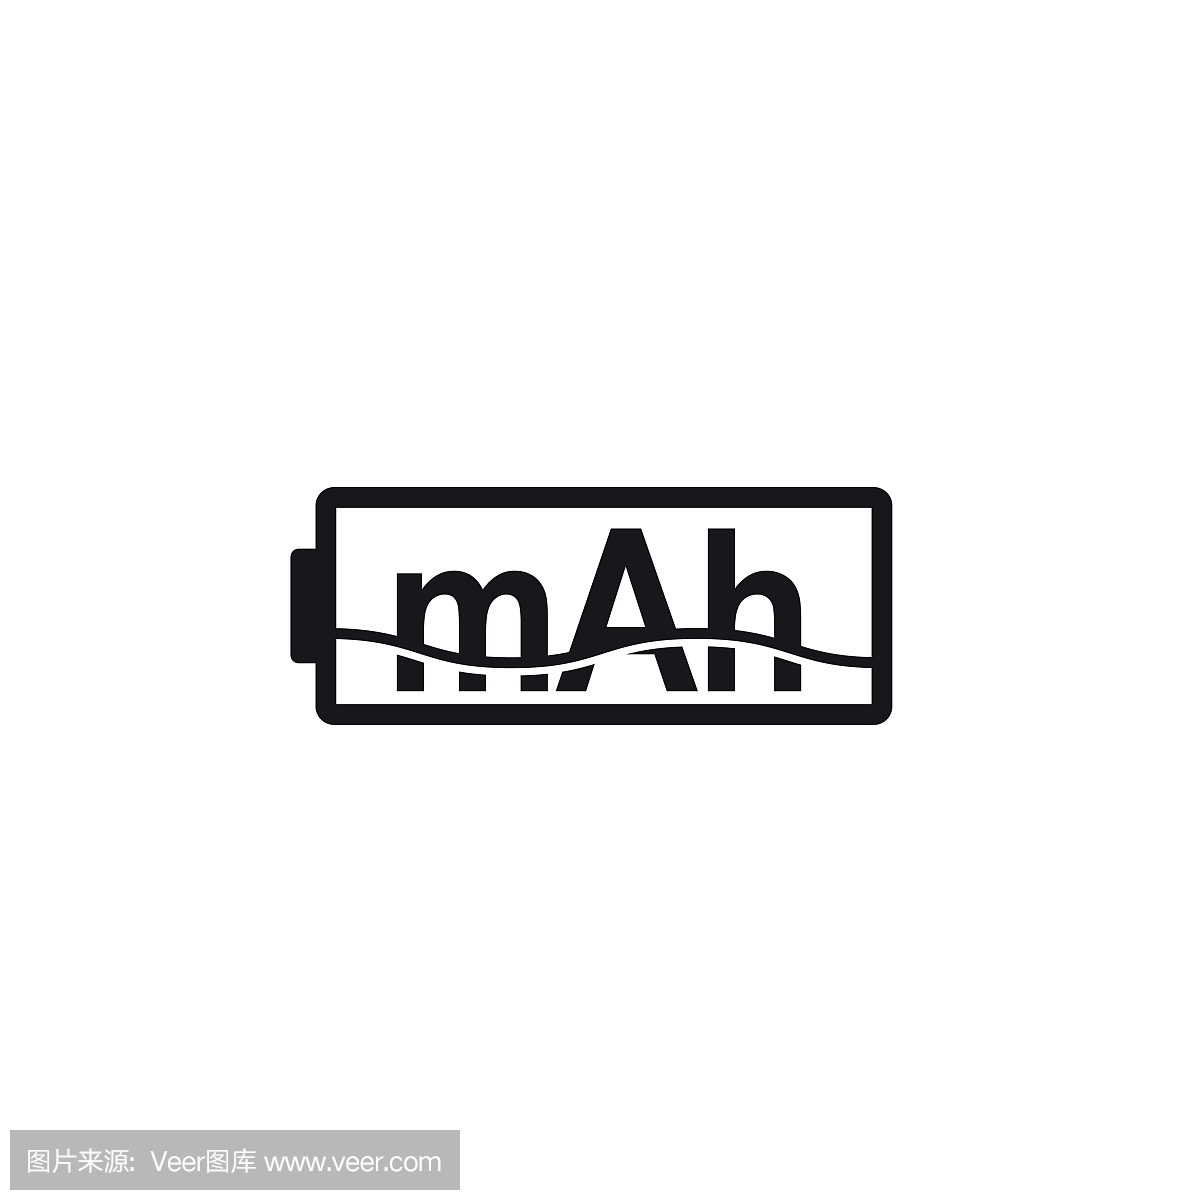 mAh图标,能量单位,容量可充电电池的符号。